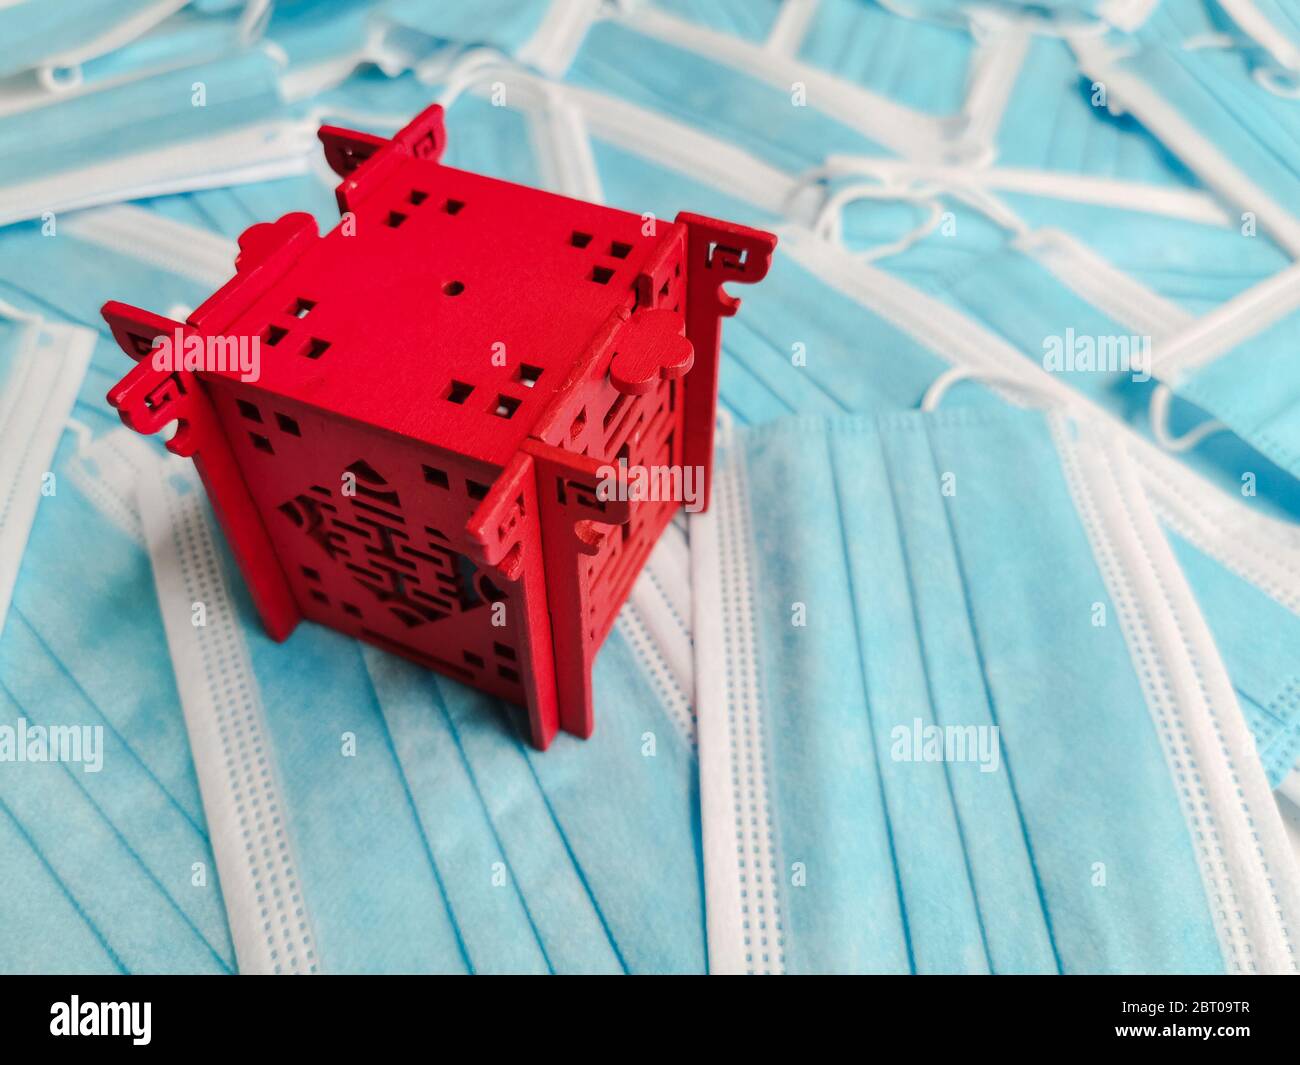 Pabellón rojo en miniatura que representa a China sobre un fondo de máscaras quirúrgicas desechables azules Foto de stock